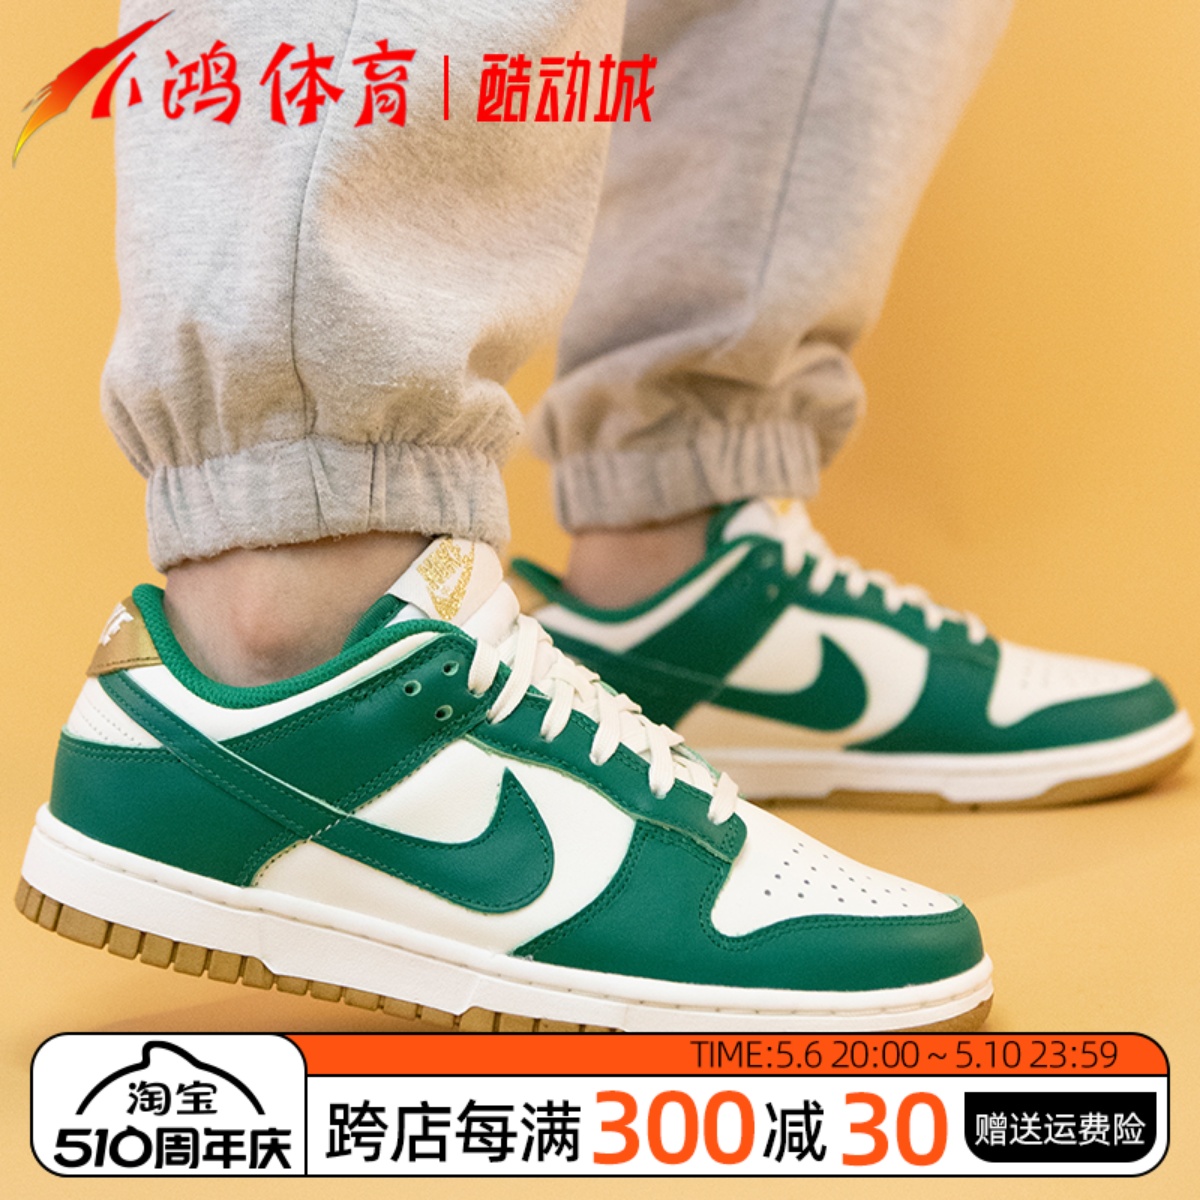 小鸿体育Nike Dunk Low 金绿色 低帮 复古休闲运动板鞋FB7173-131